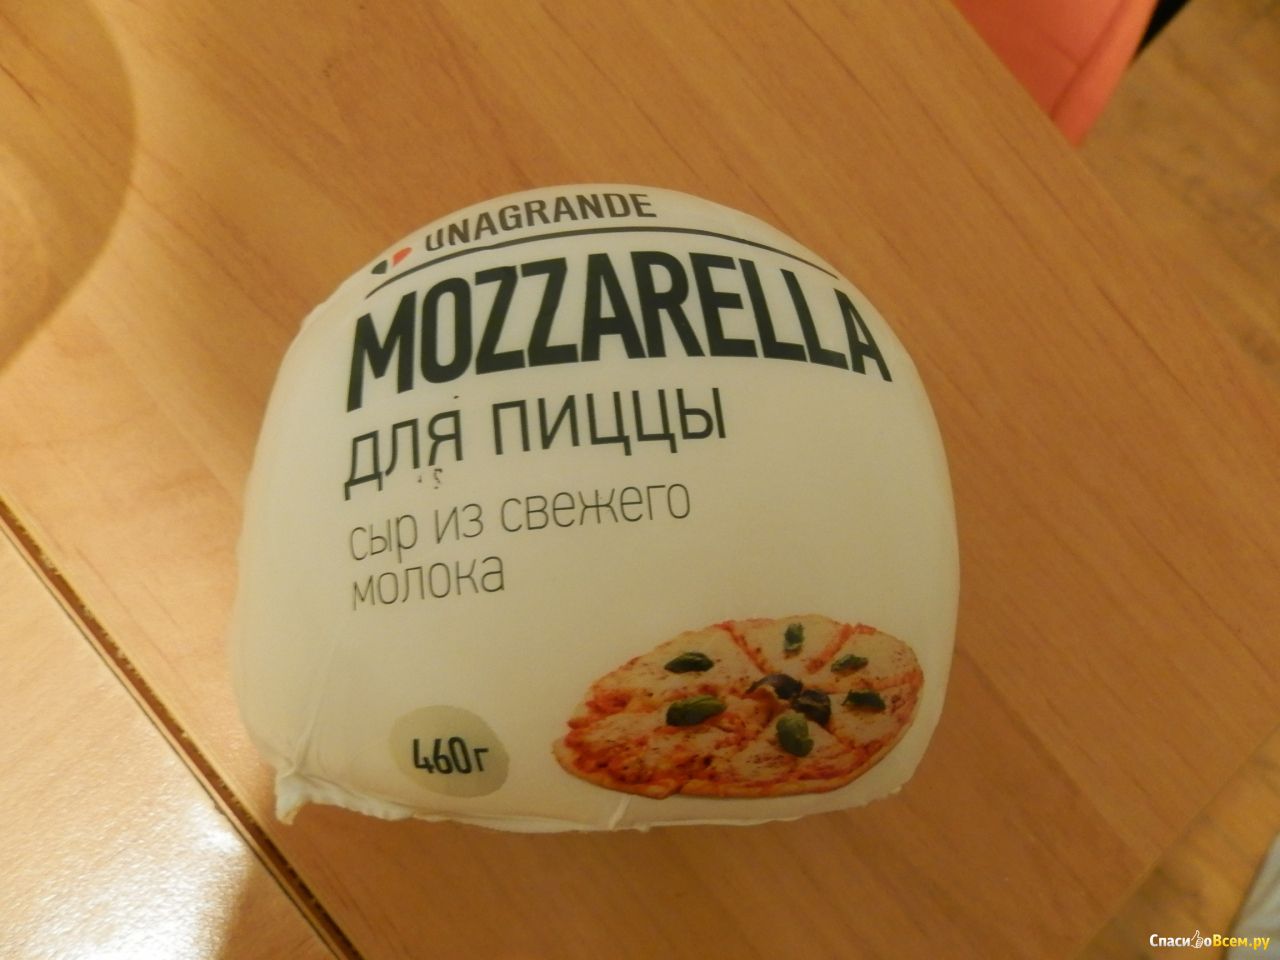 Какой сыр лучше использовать для пиццы. Unagrande mozzarella для пиццы. Упаковка сыра моцарелла. Моцарелла для пиццы упаковка. Моцарелла для пиццы круглая.